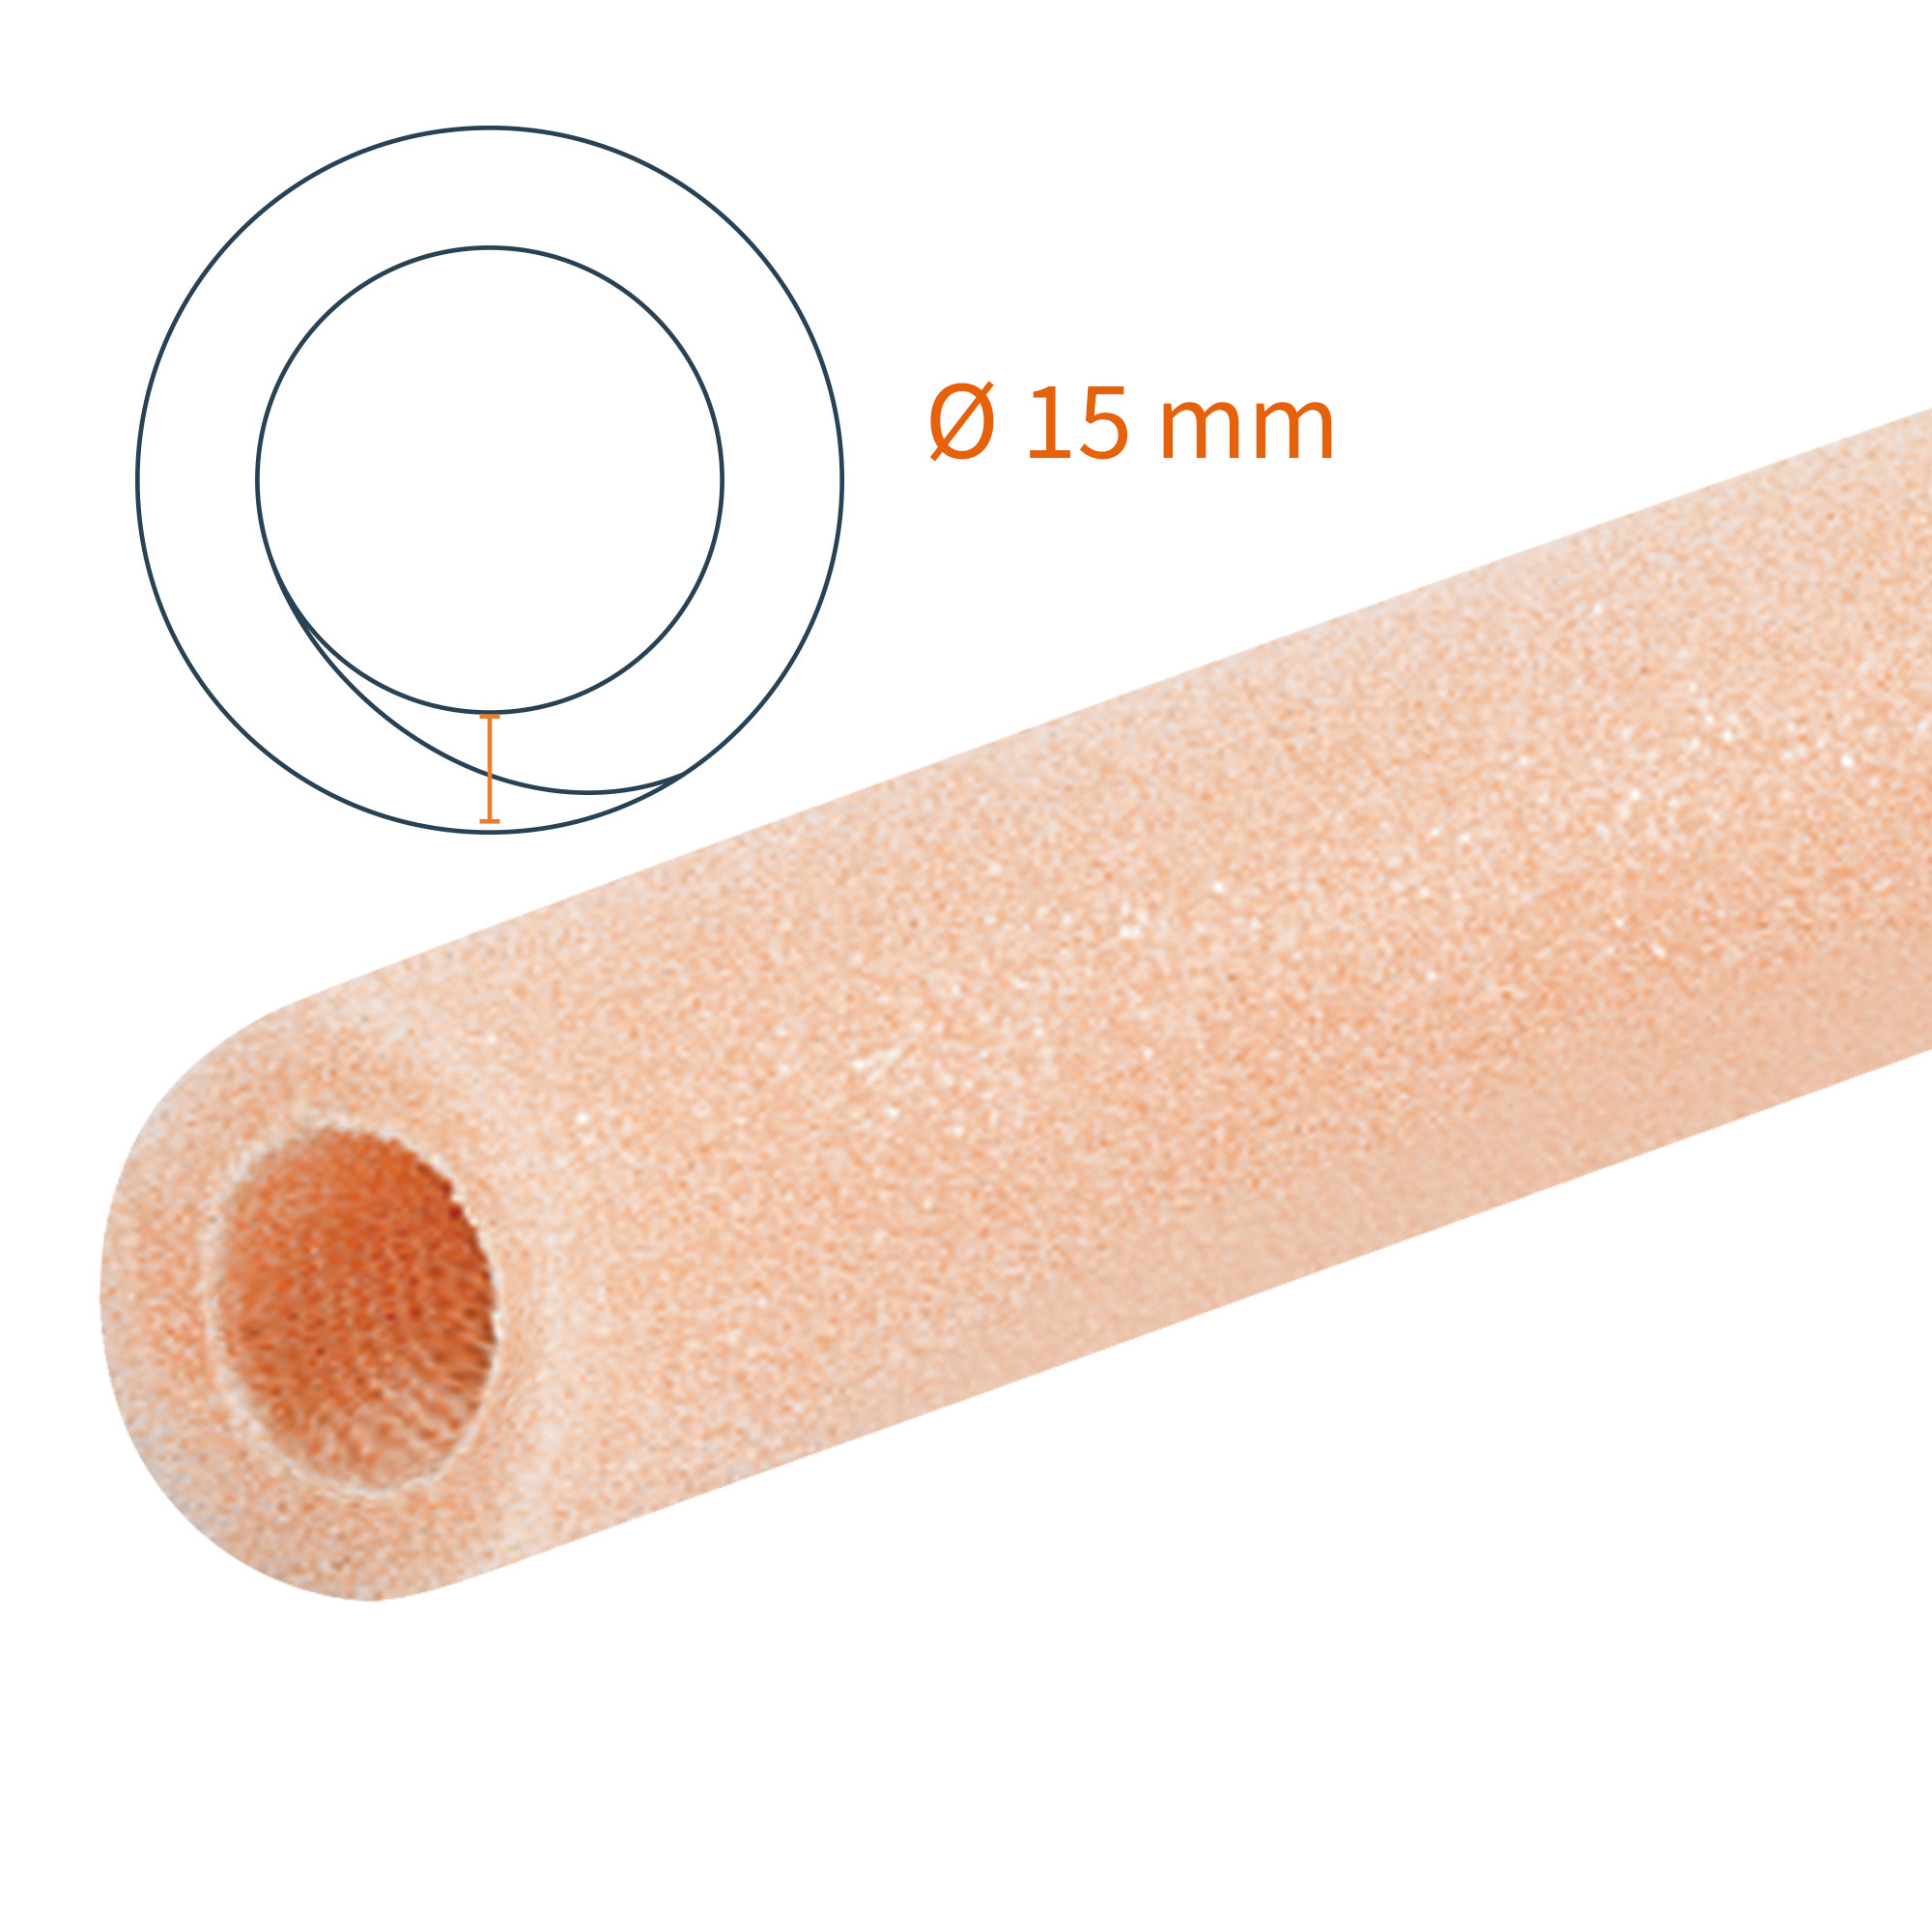 Protezione tubolare Tubifoam T-Foam Semplice